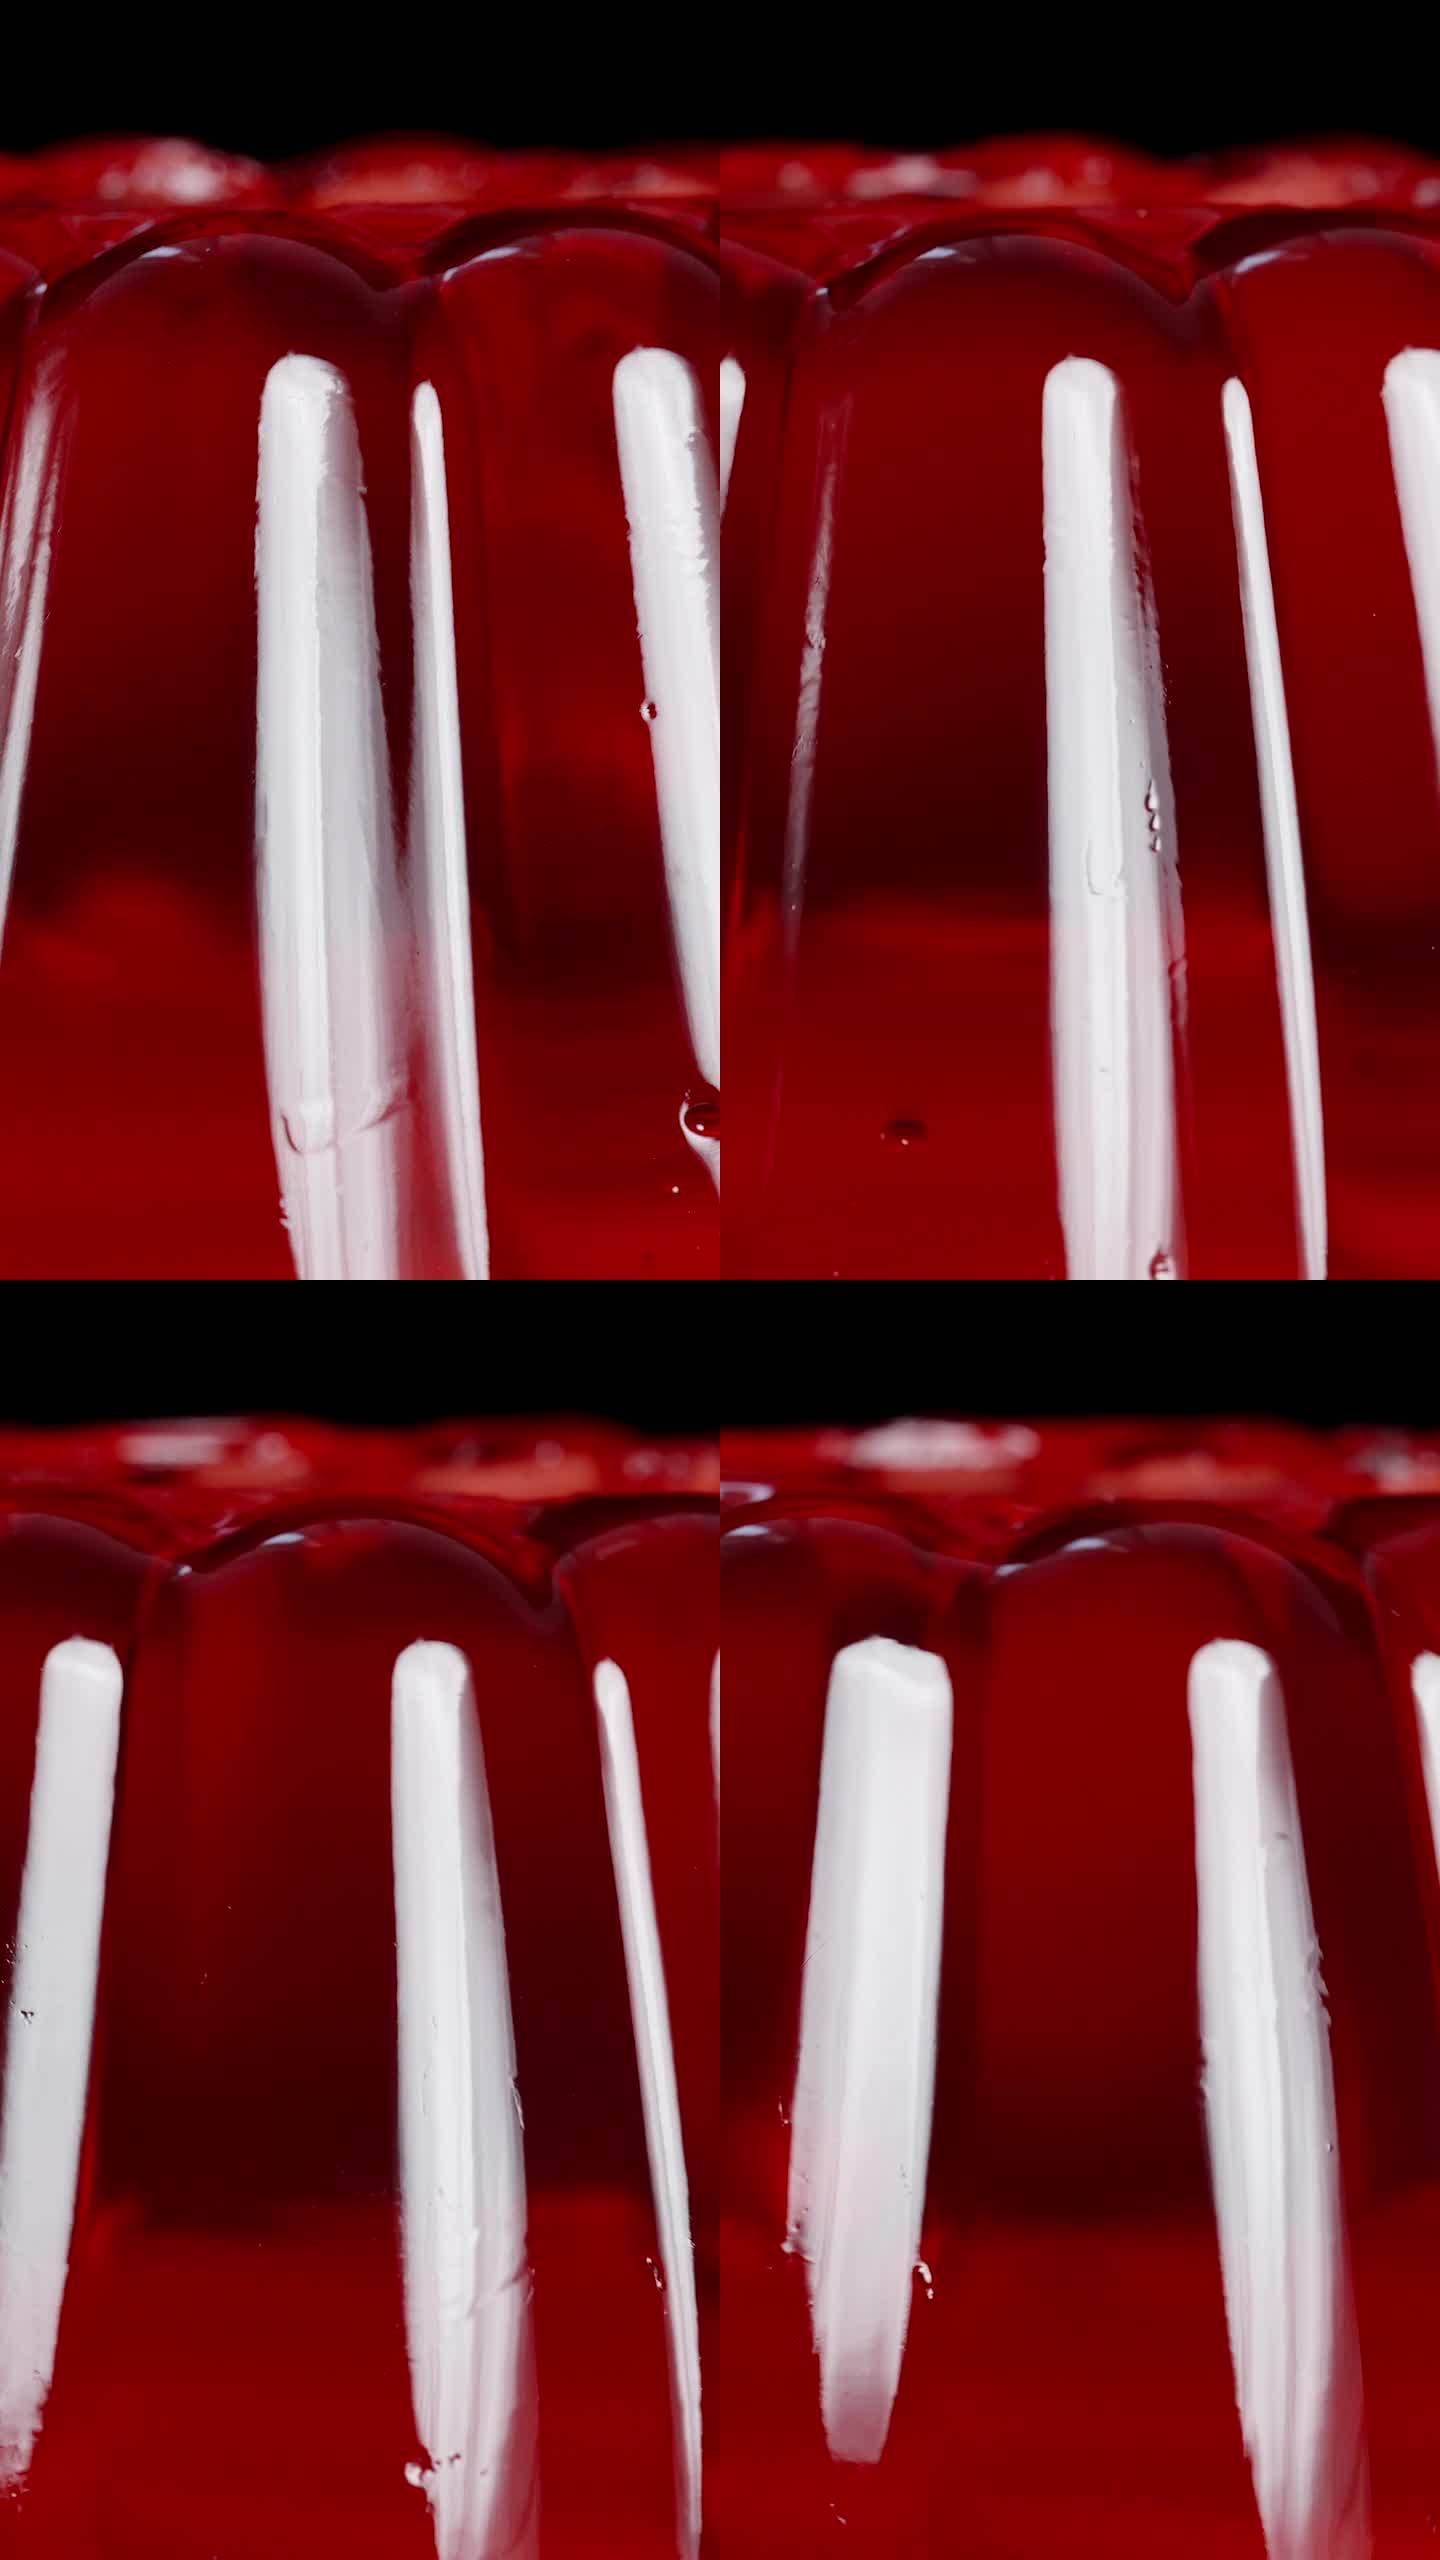 垂直视频。经典形状的颤抖红色果冻特写。